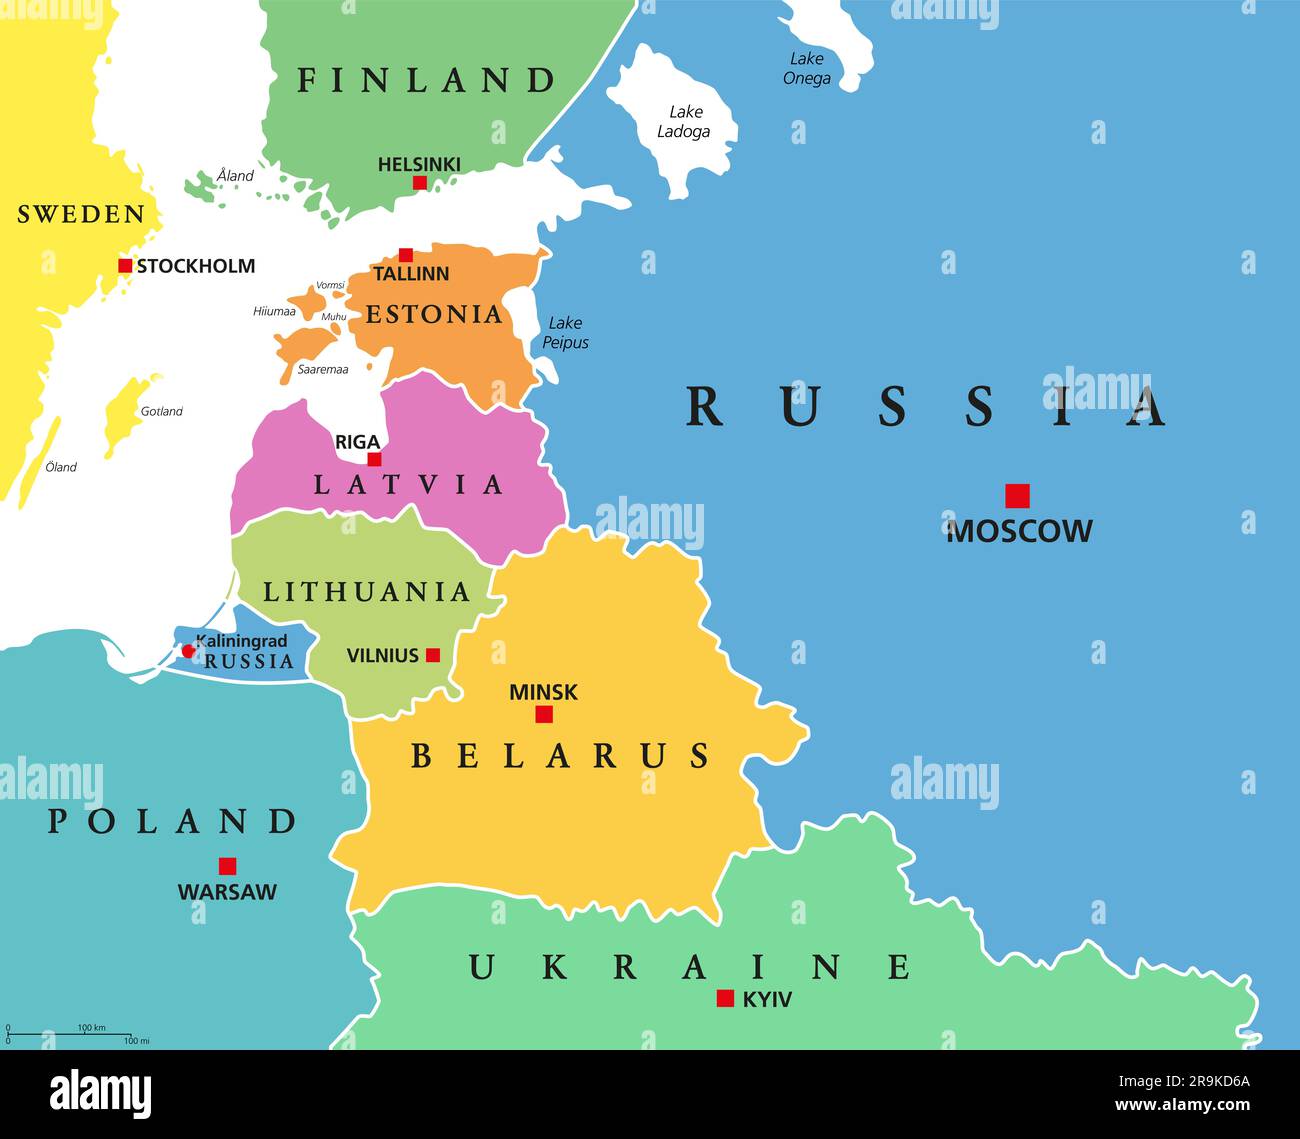 Etats baltes, pays colorés, carte politique. De la Finlande à l'Estonie, de la Lettonie et de la Lituanie à la Pologne, et de Kaliningrad à la Biélorussie. Banque D'Images